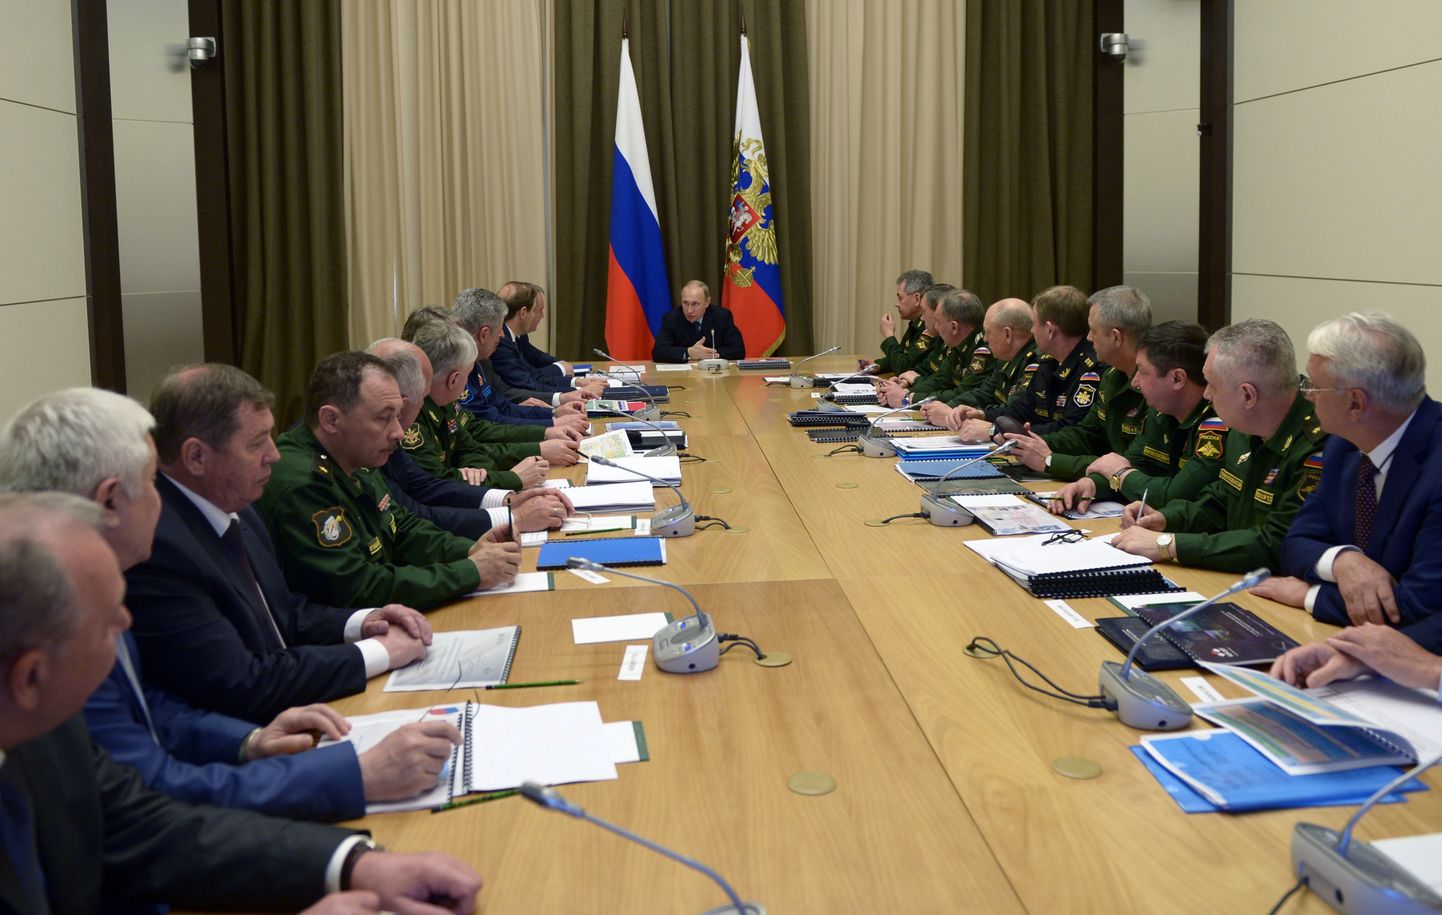 Venemaa president Vladimir Putin oma Sotši residentsis kindralitega nõu pidamas.